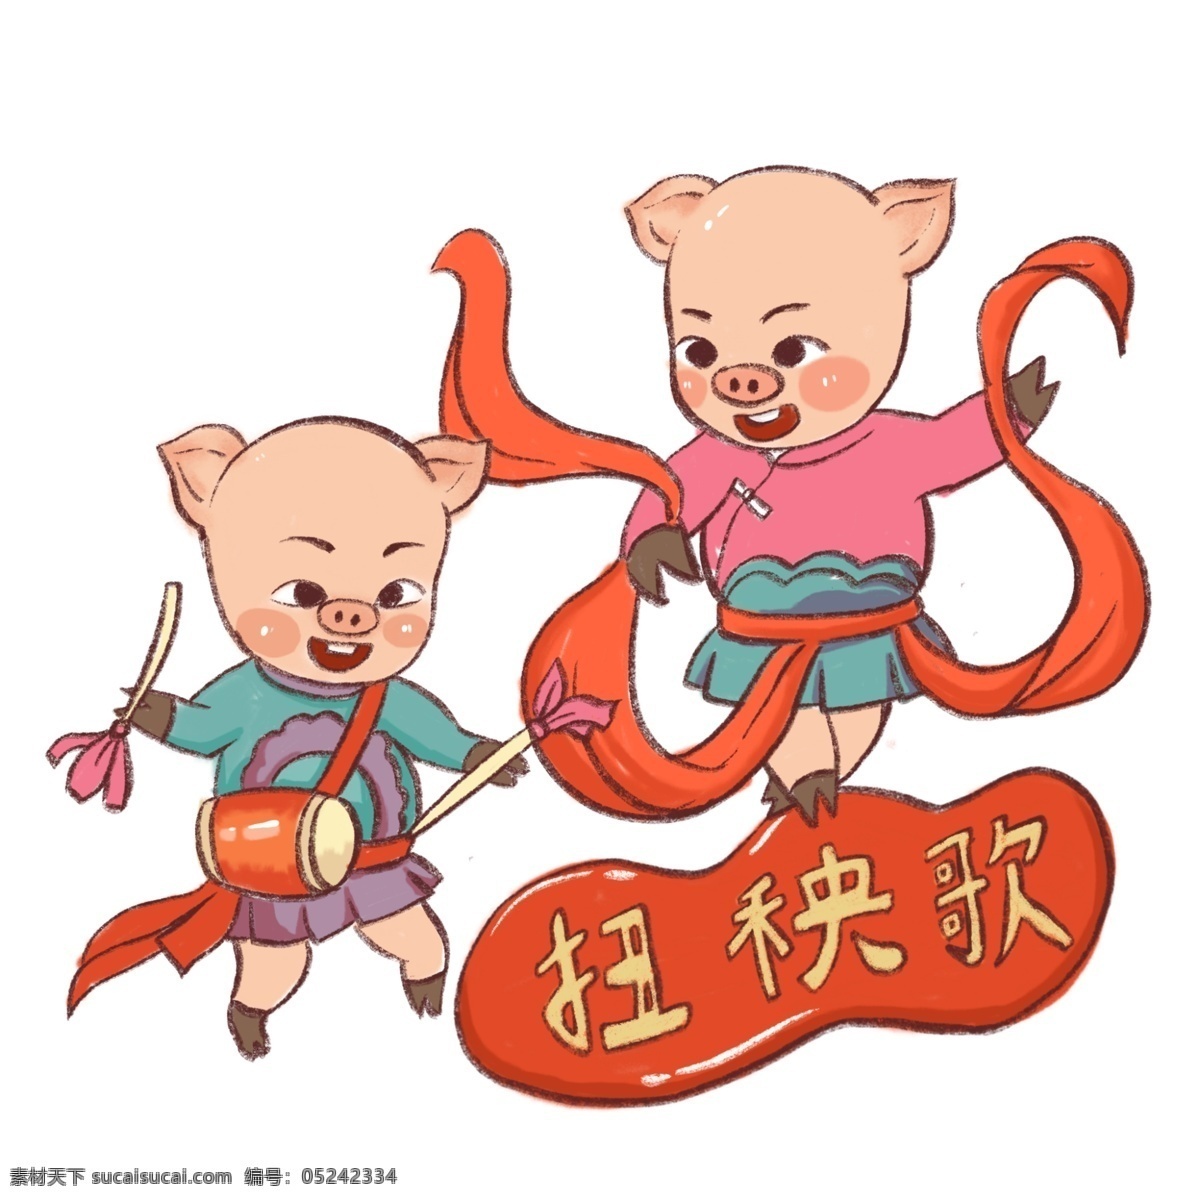 猪年 扭秧歌 2019 年 新年 猪 新春 春节 生肖猪 2019年